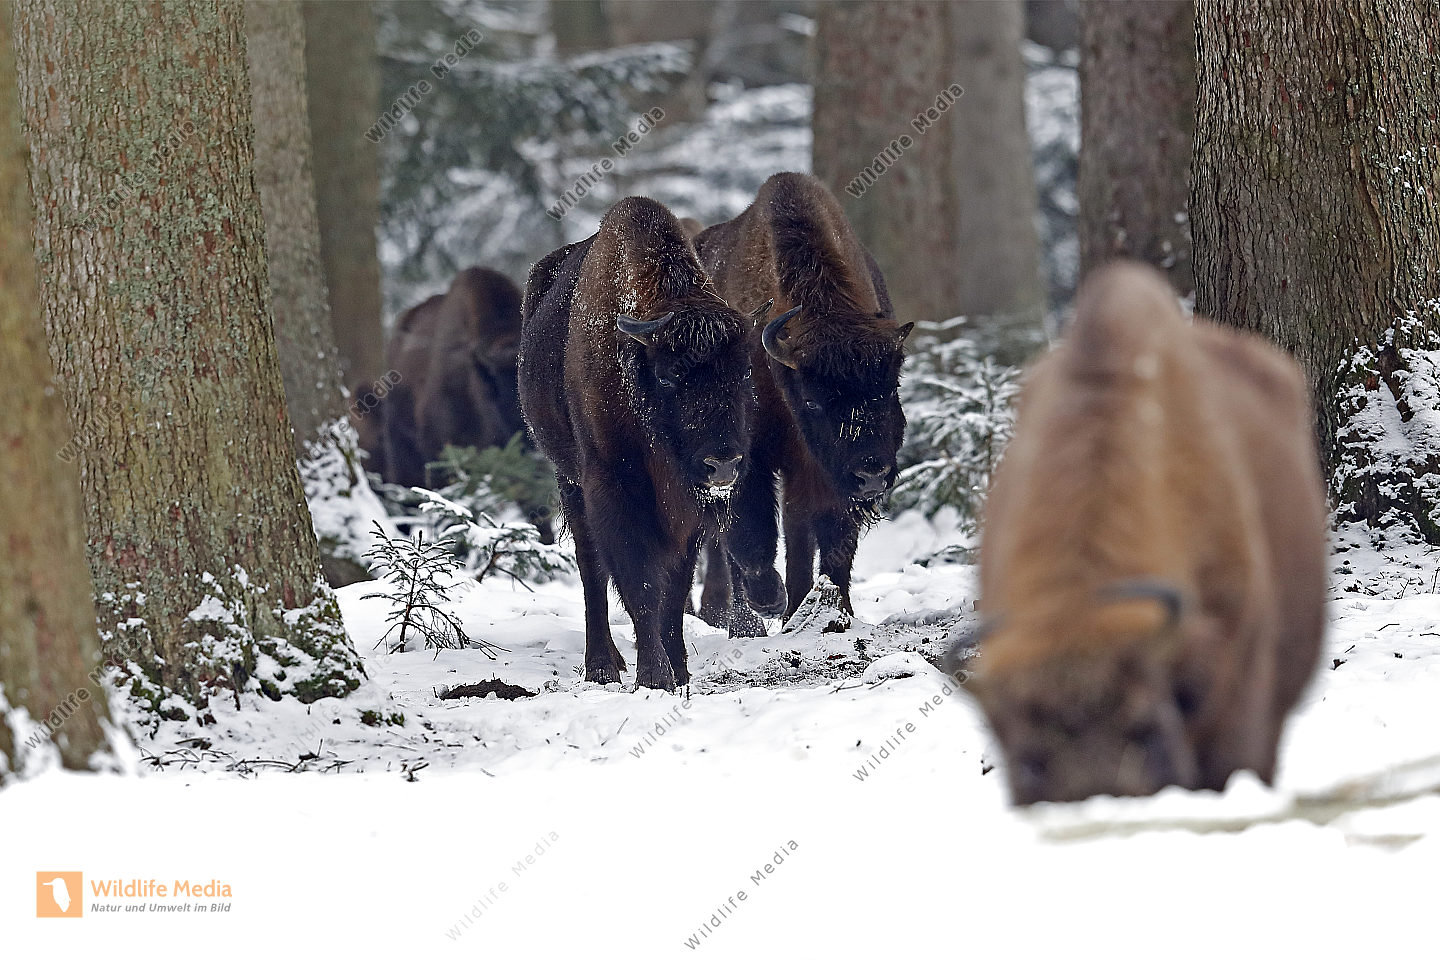 Wisent im Schnee Bild bestellen - Naturbilder bei Wildlife Media